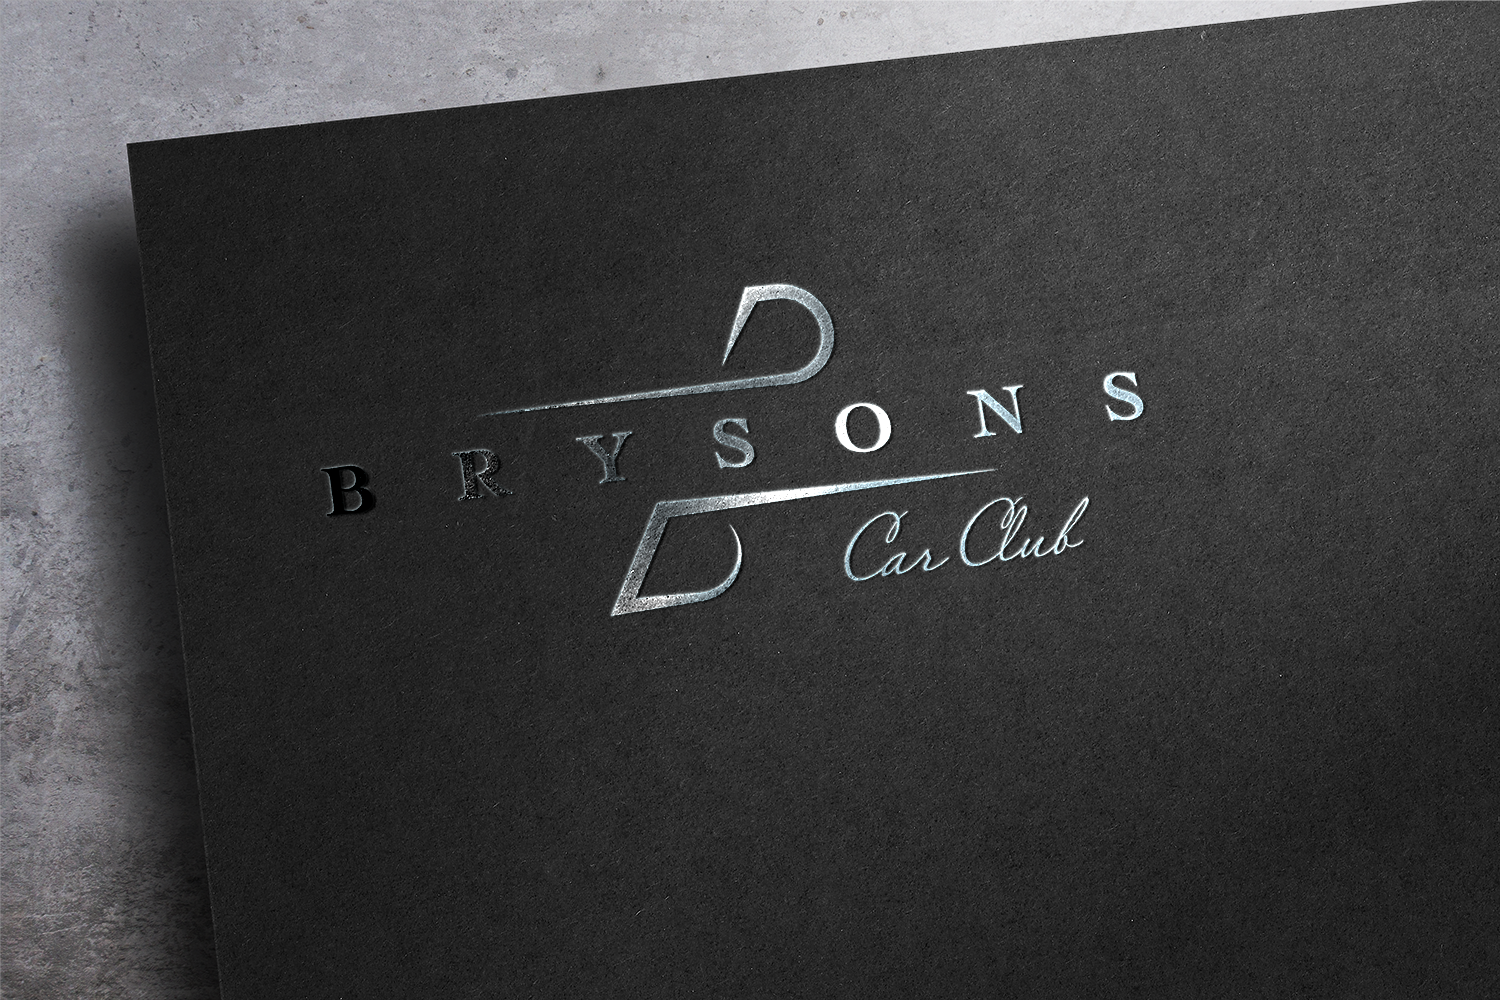 Brysons Car Club